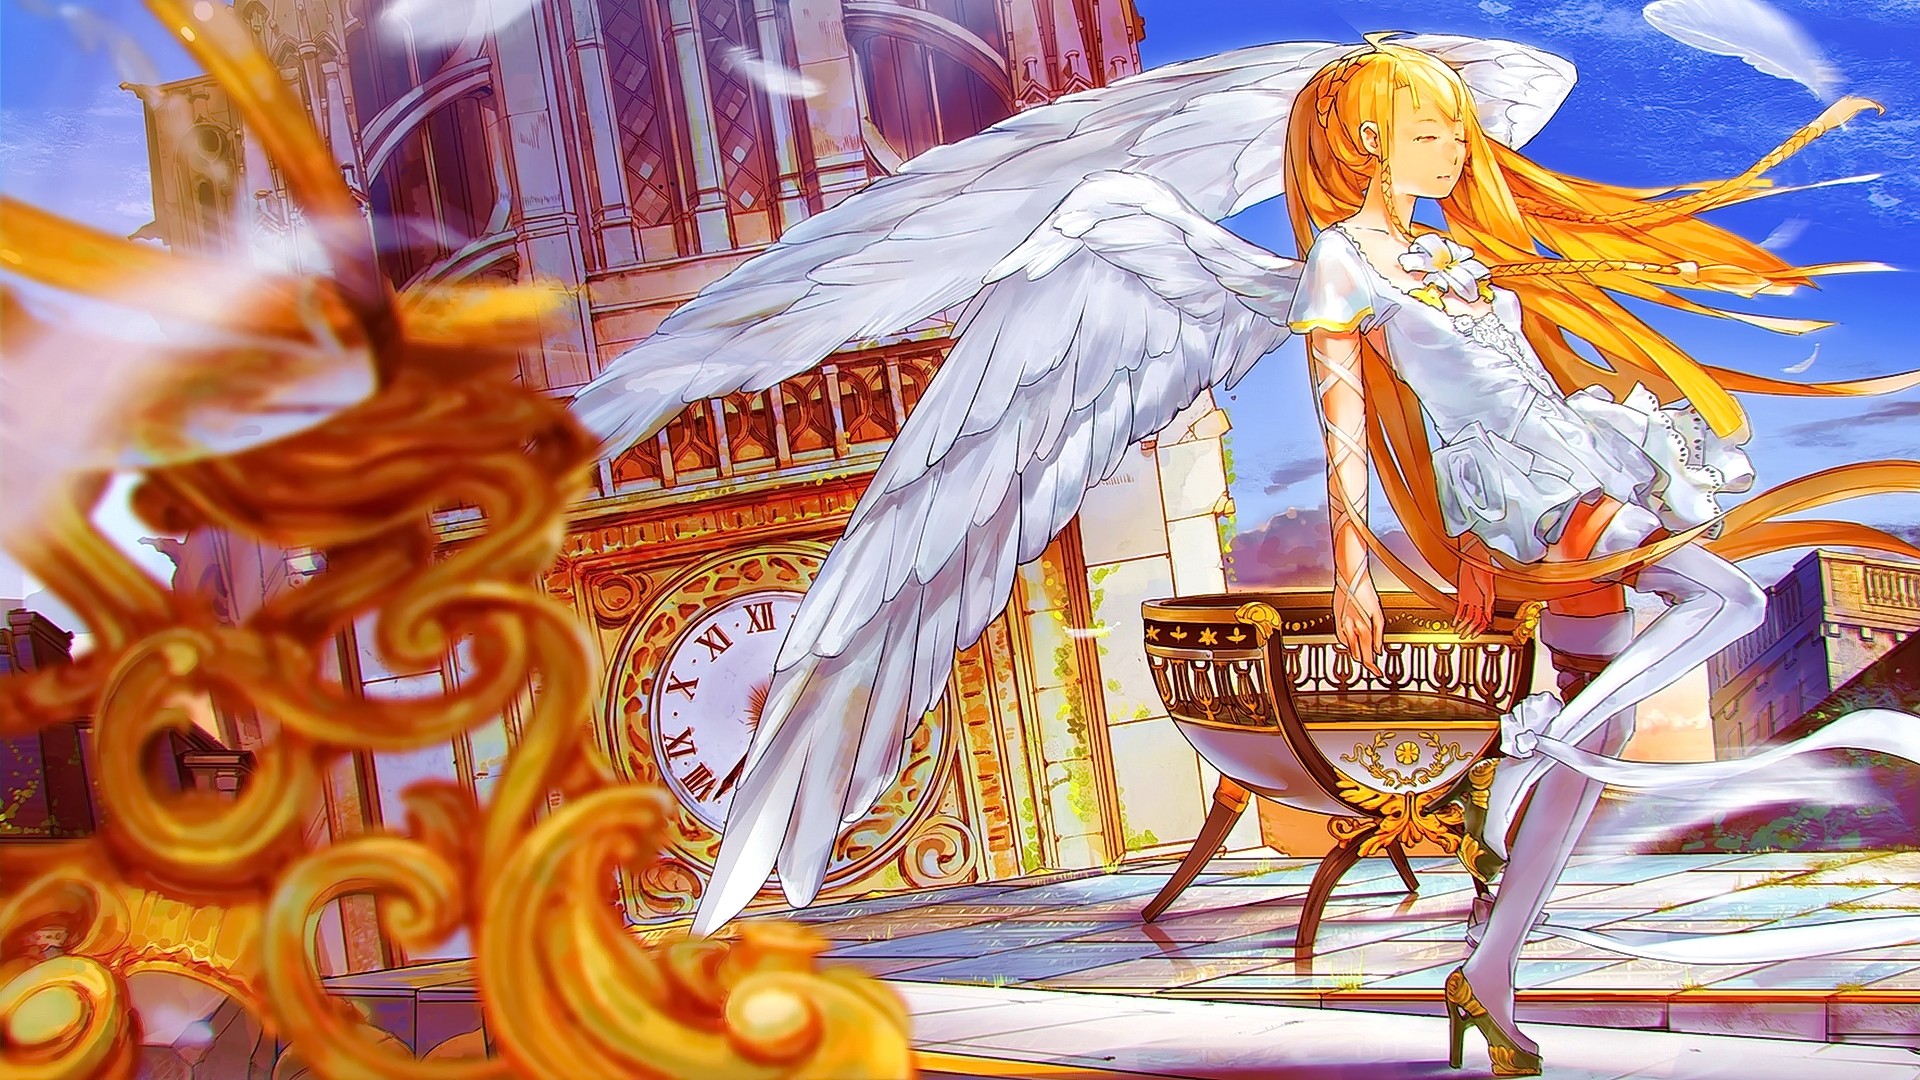 Anime 1920x1080 anime anime girls long hair closed eyes wings smiling fantasy art fantasy girl